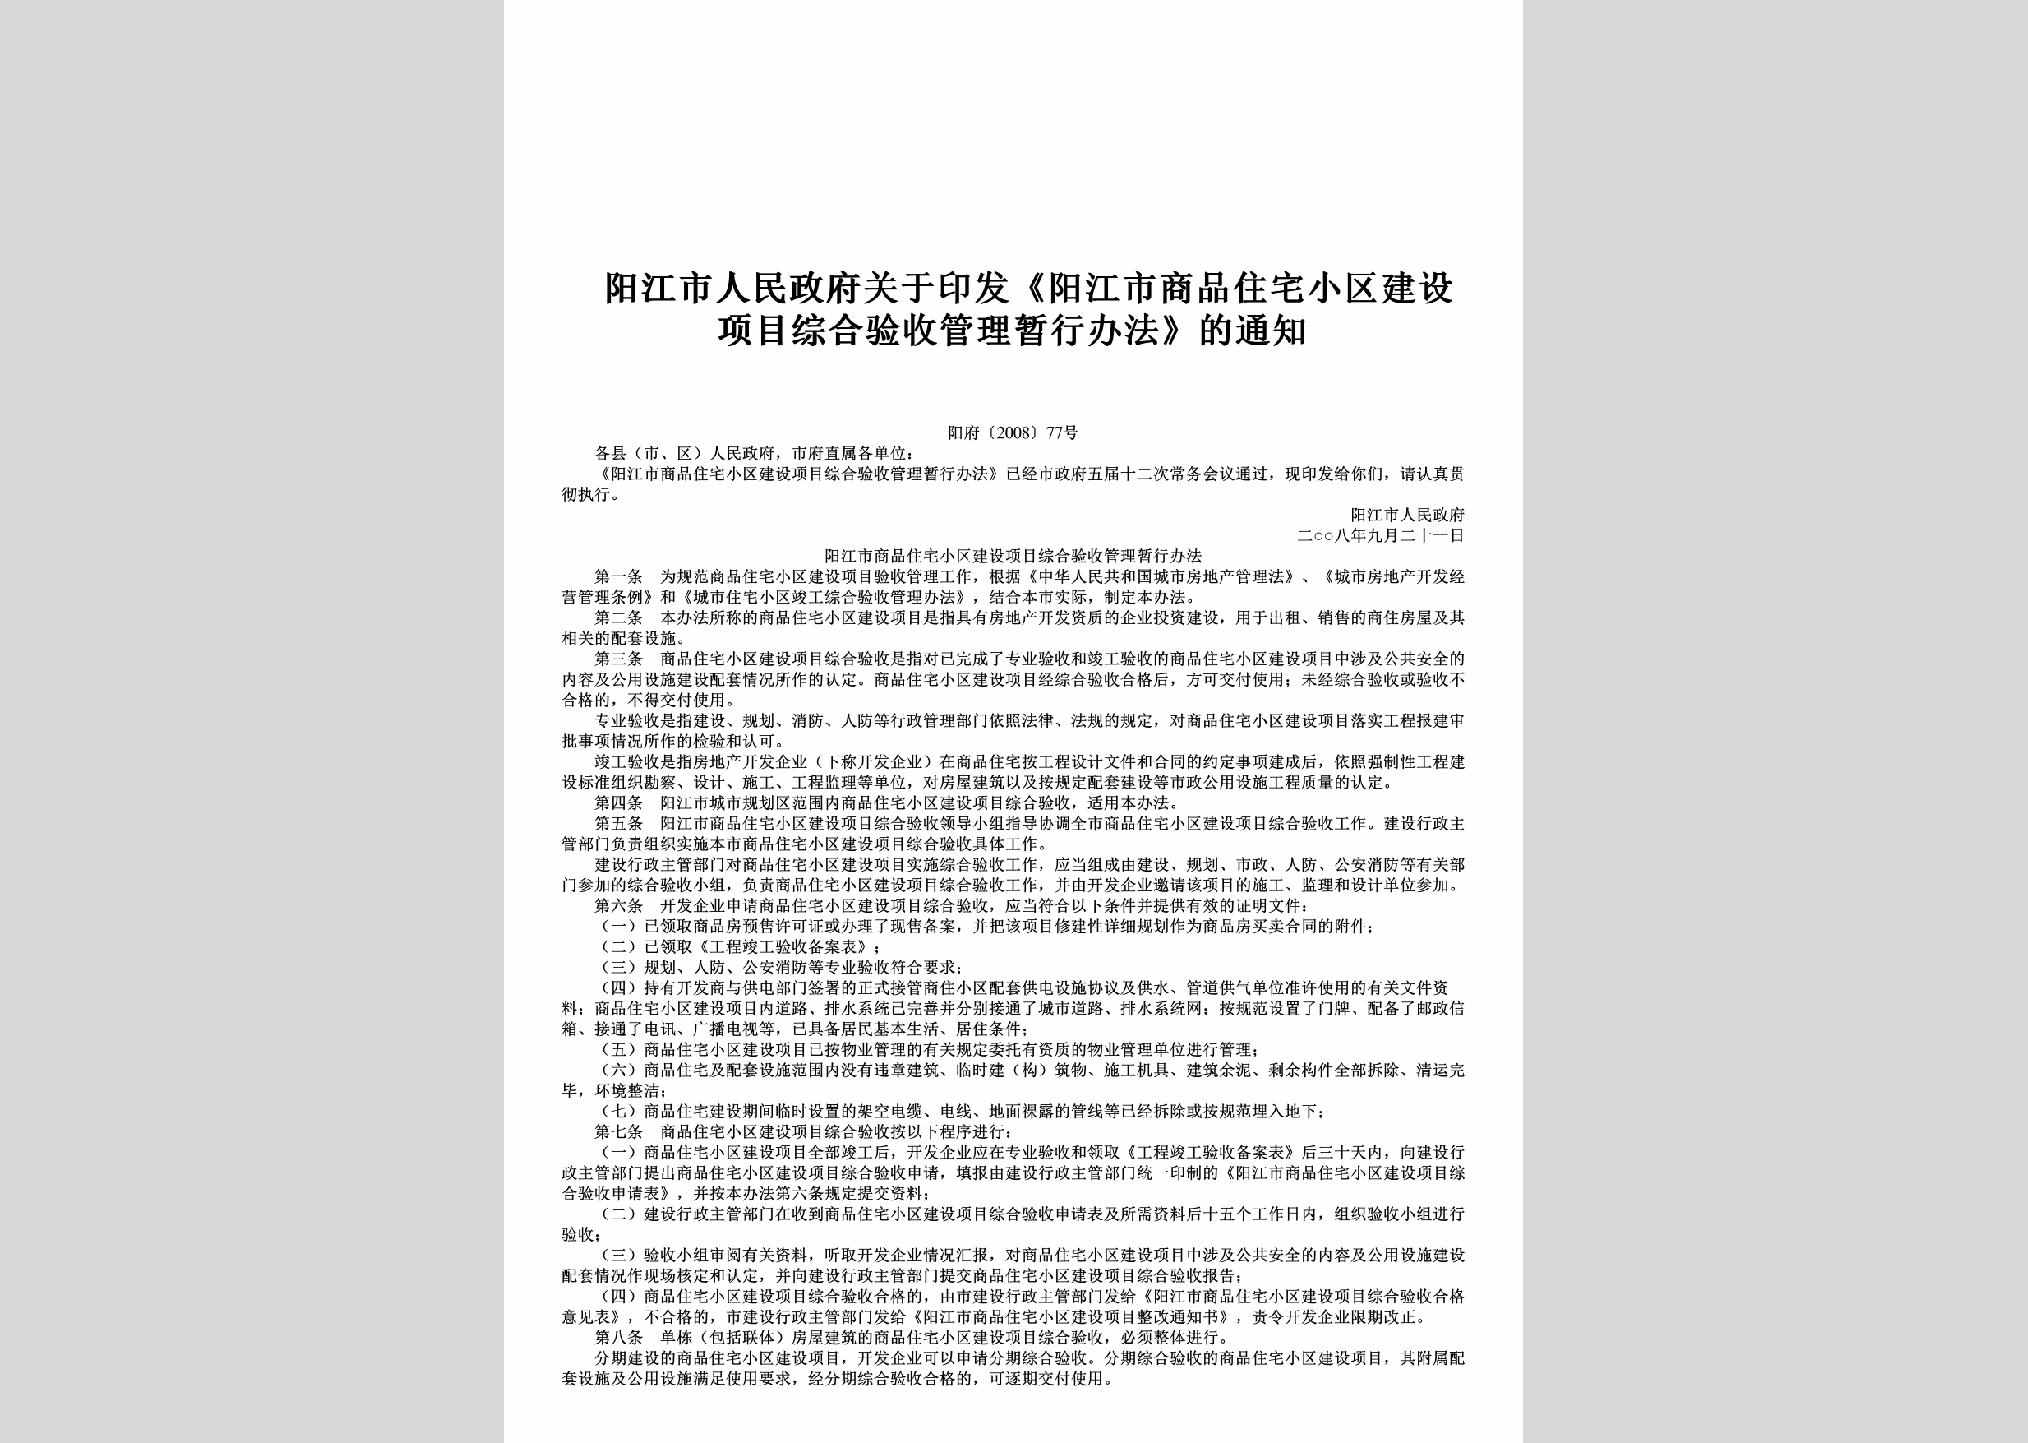 阳府[2008]77号：关于印发《阳江市商品住宅小区建设项目综合验收管理暂行办法》的通知